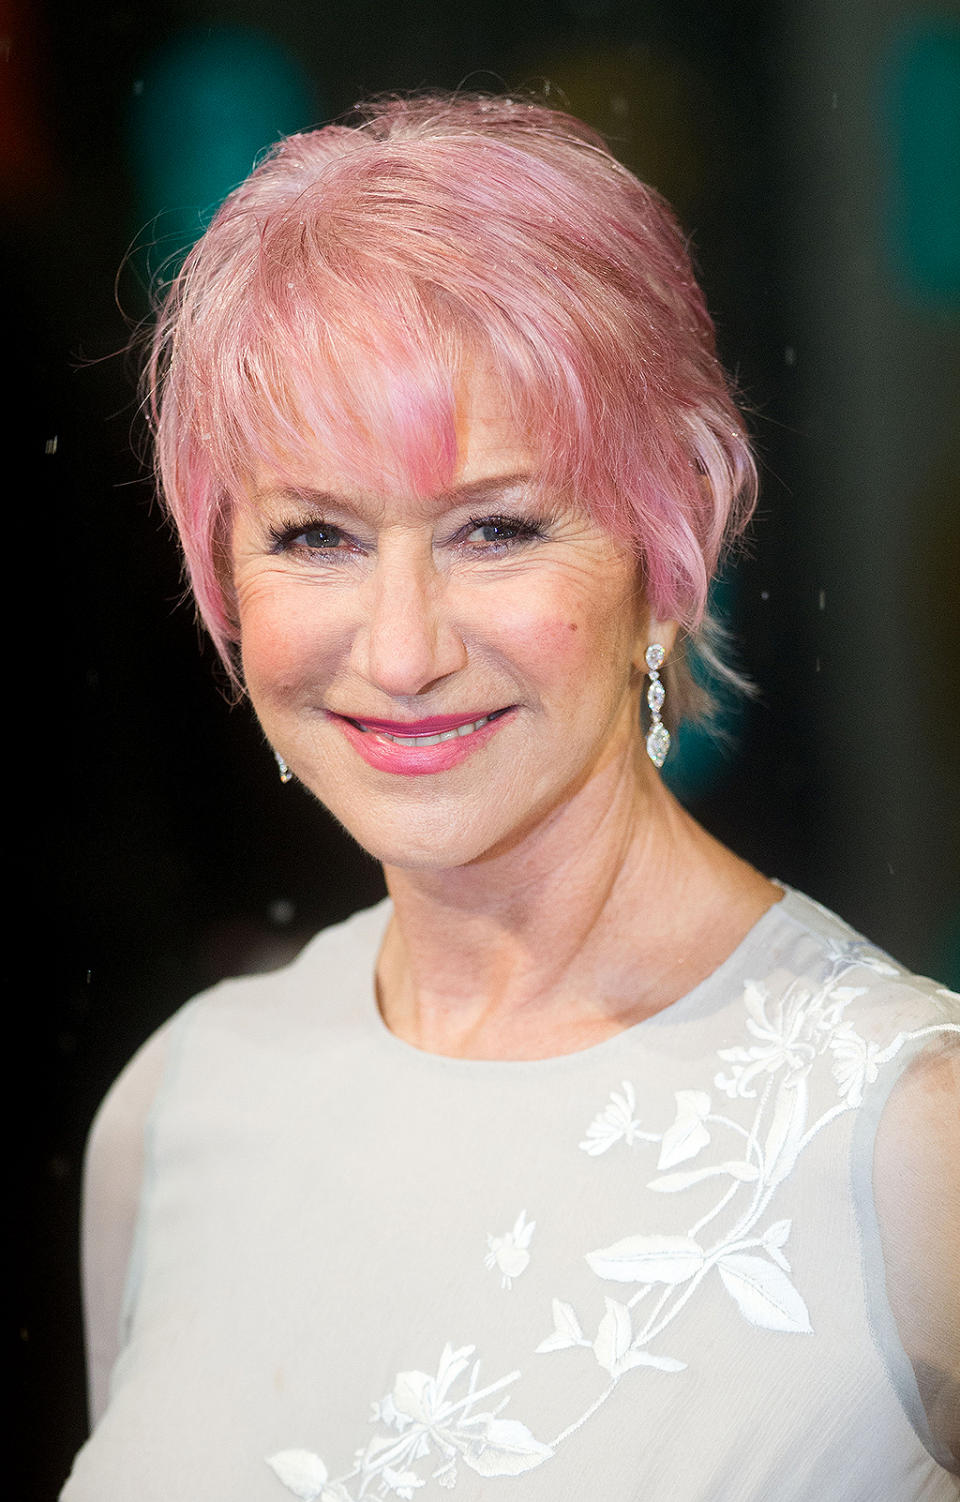 Helen Mirren with pink hair